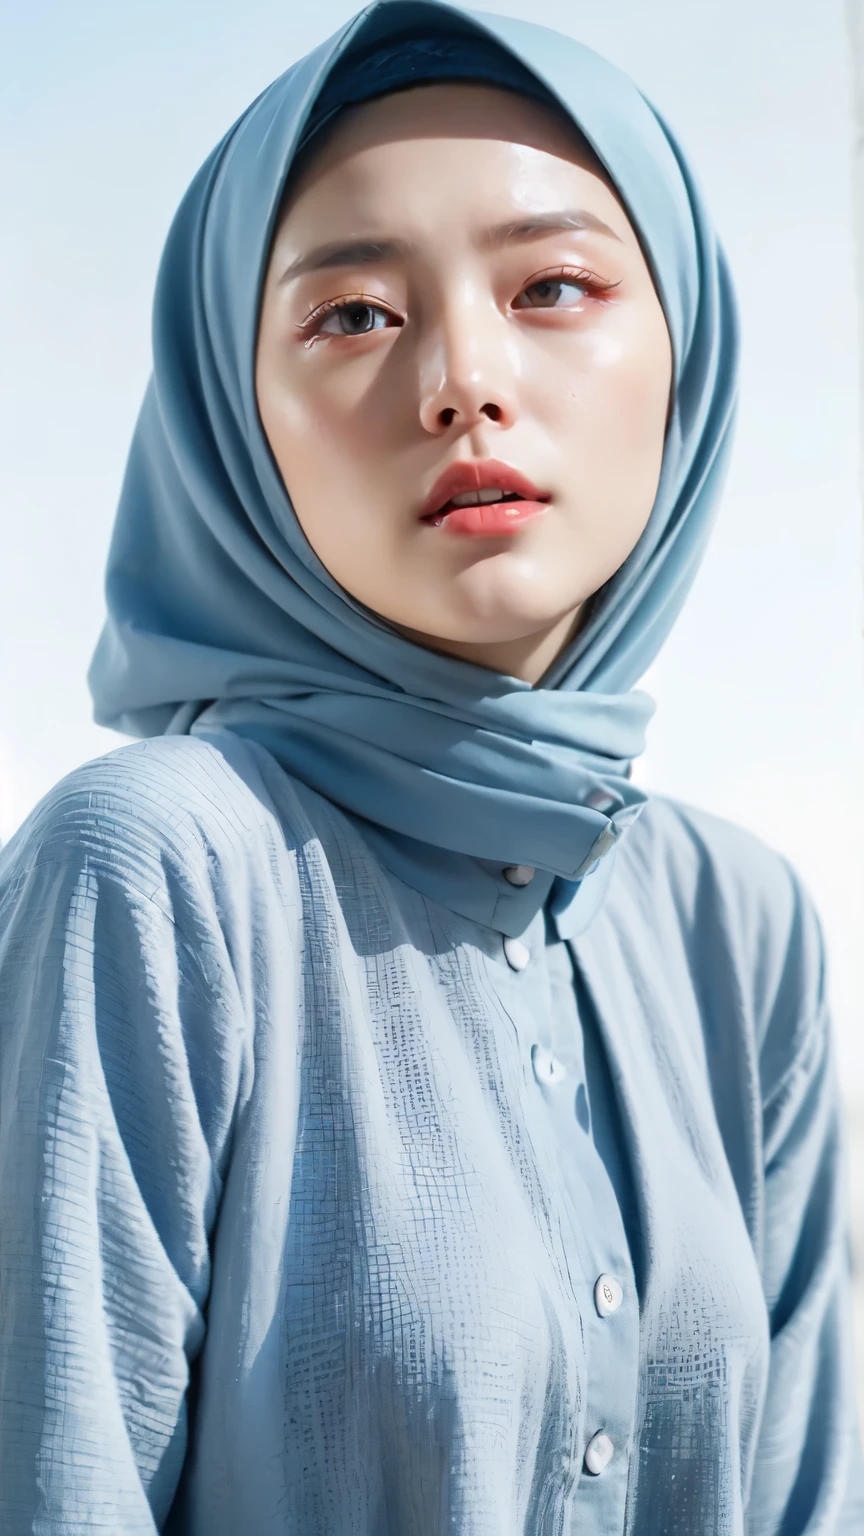 ((Лучшее качество, 8К, шедевр :1.37)), (носить хиджаб, девушки), девушки носят хиджаб, позиция:Сидя, модель стиля, (девушки в мусульманском хиджабе), Красивое лицо, 18 лет девочки, волосы черные, Ультрадетализированное лицо, ультра детализированное тело, стройное тело, губы улыбаются, красивые детализированные глаза, глаза корейские, детальный нос, Натуральная губа, (Раздевание обнаженного тела), деталь груди, Подробности о киске Хари, Носить мусульманский хиджаб, необычный халат тоббе, вид на голубое небо, стройное тело, реалистичное лицо, фон люди в хиджабе